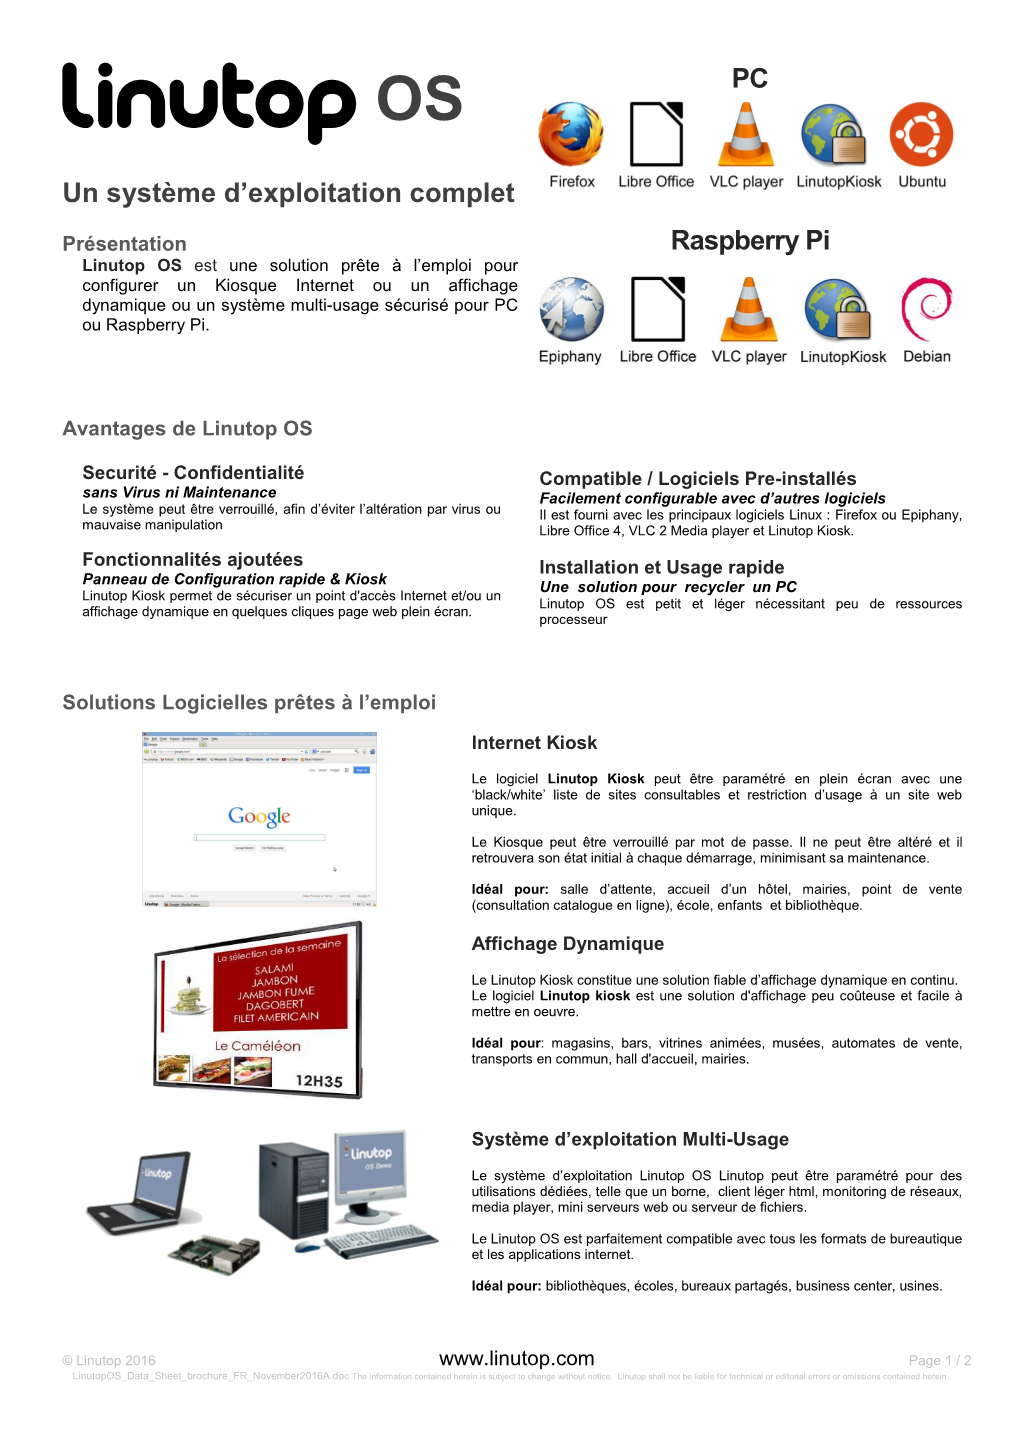 Linutop OS Pour PC Ou Raspberry Pi